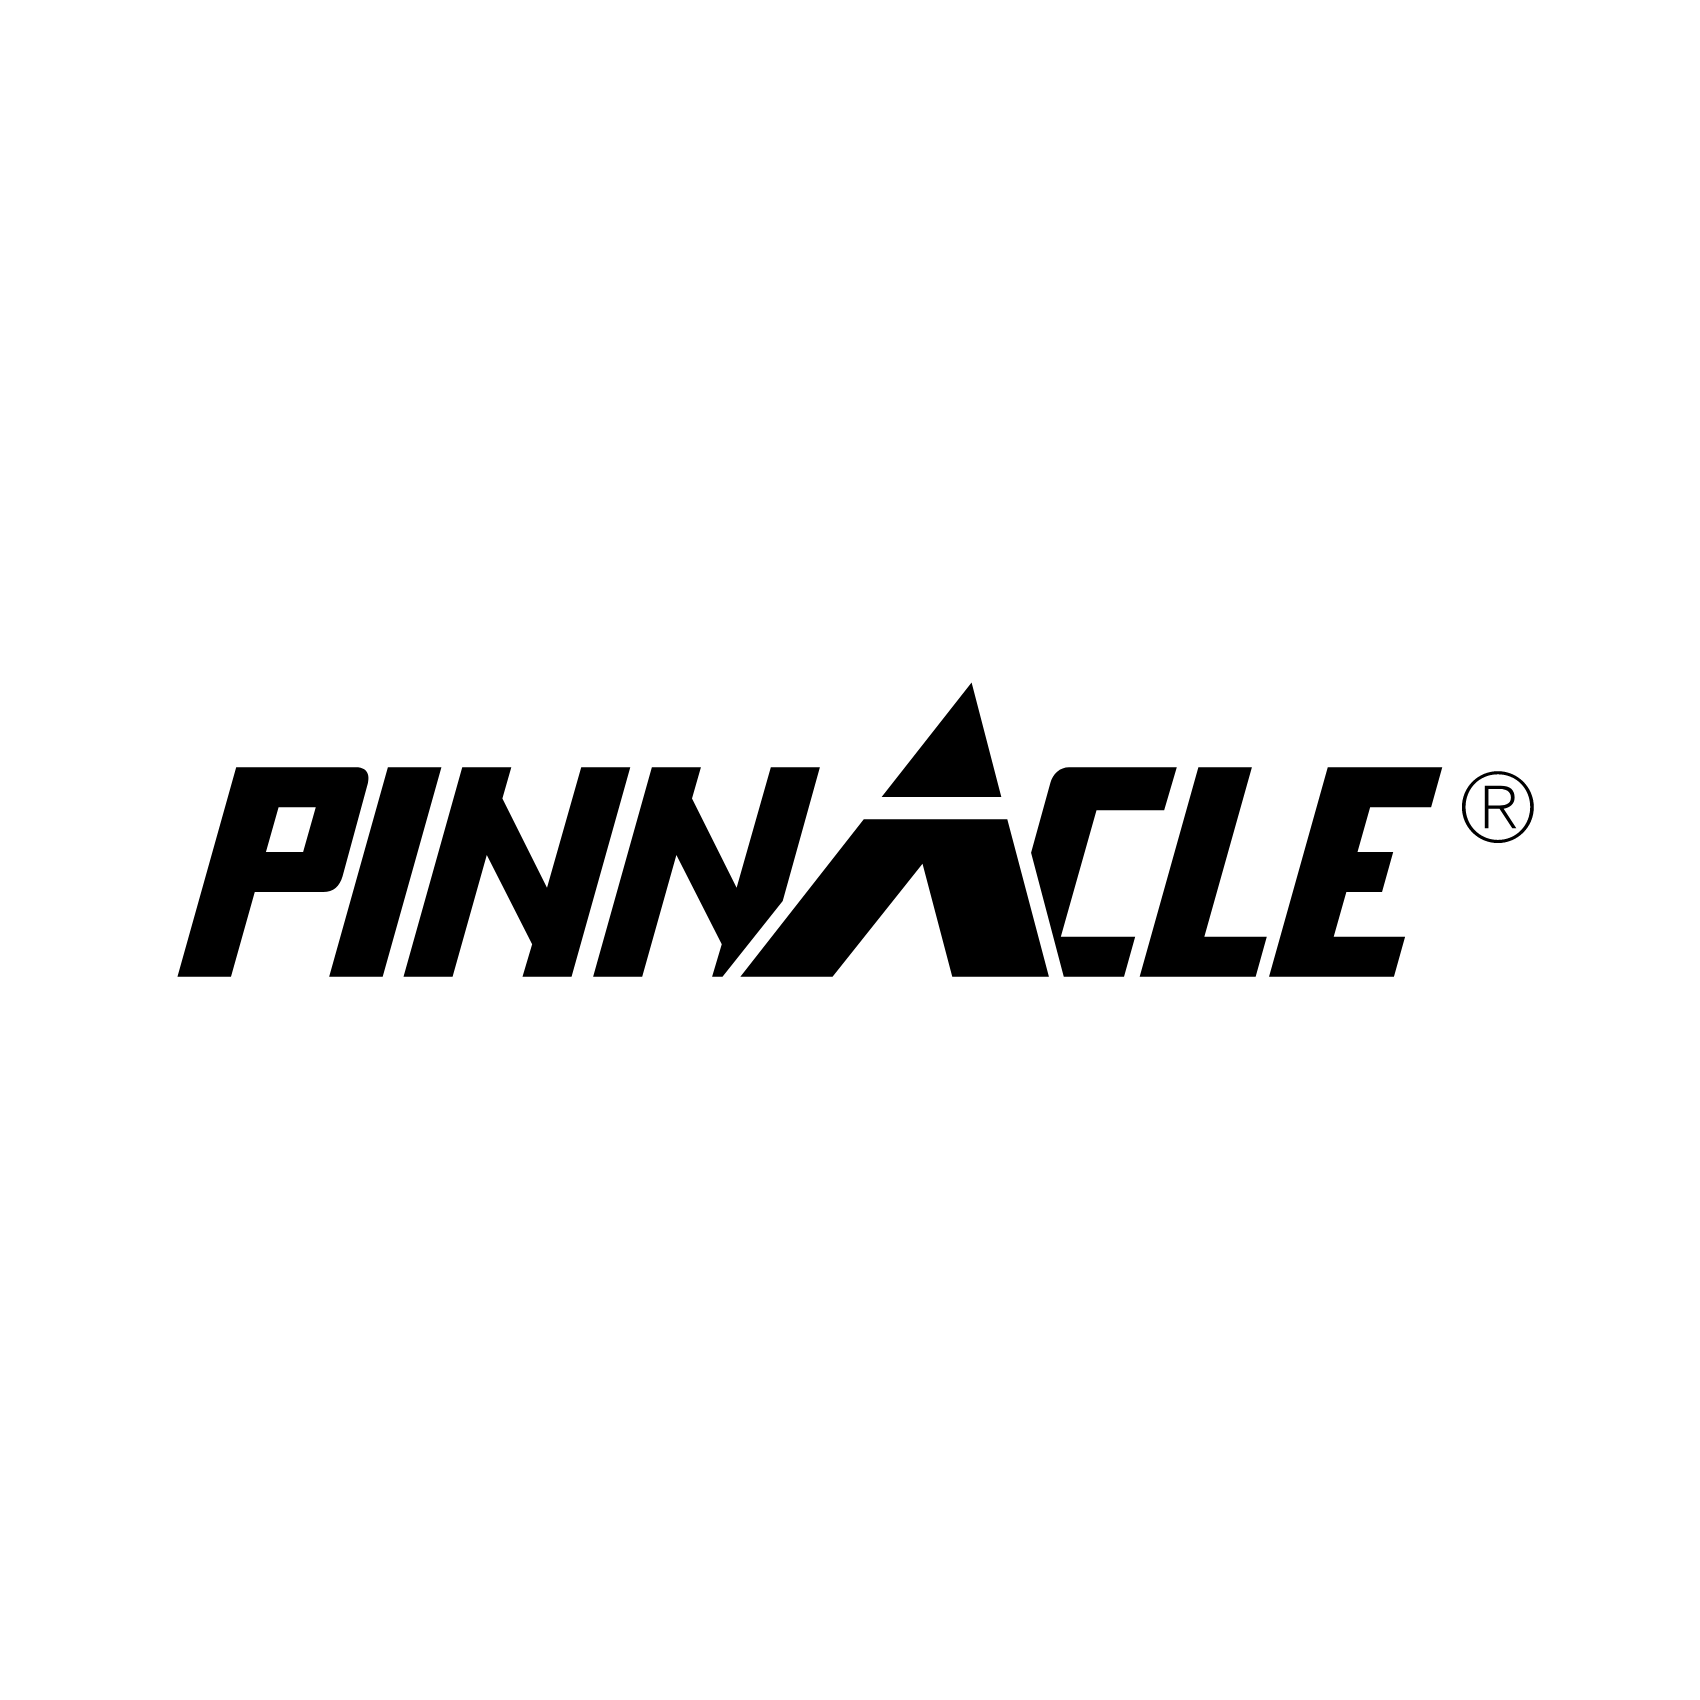 Pinnacle acquires set designer, fabricator Creative Dimensions -  NewscastStudio